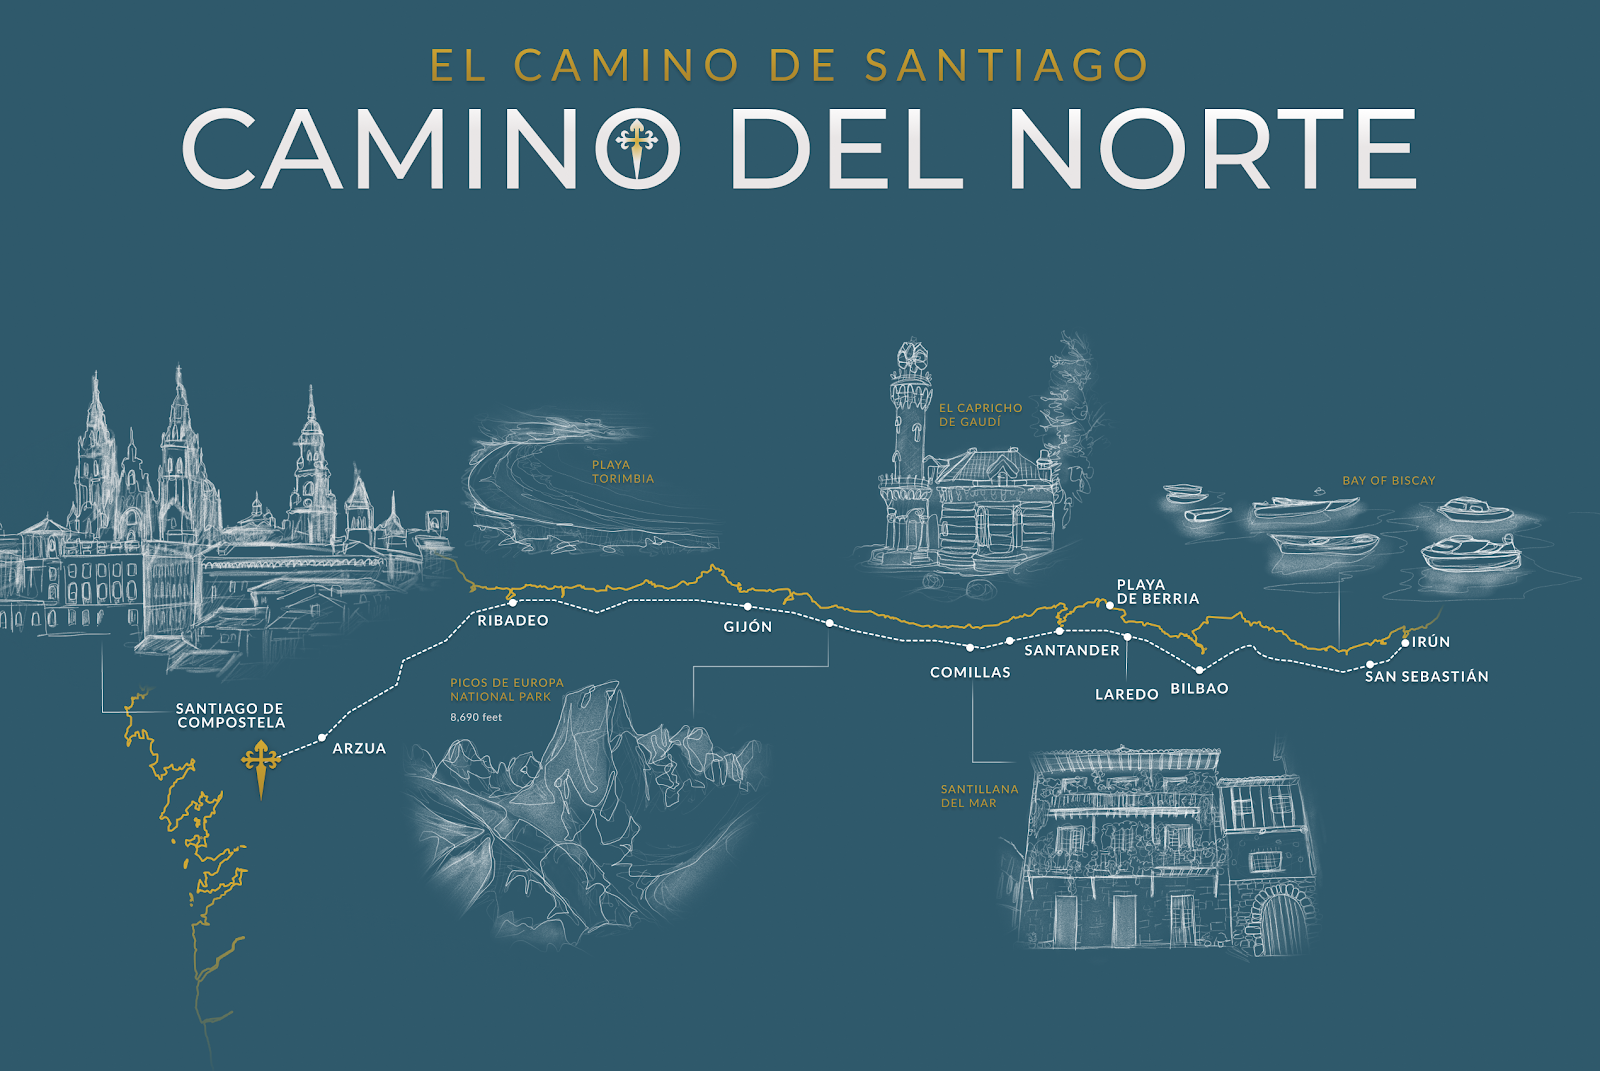 Camino del Norte route map